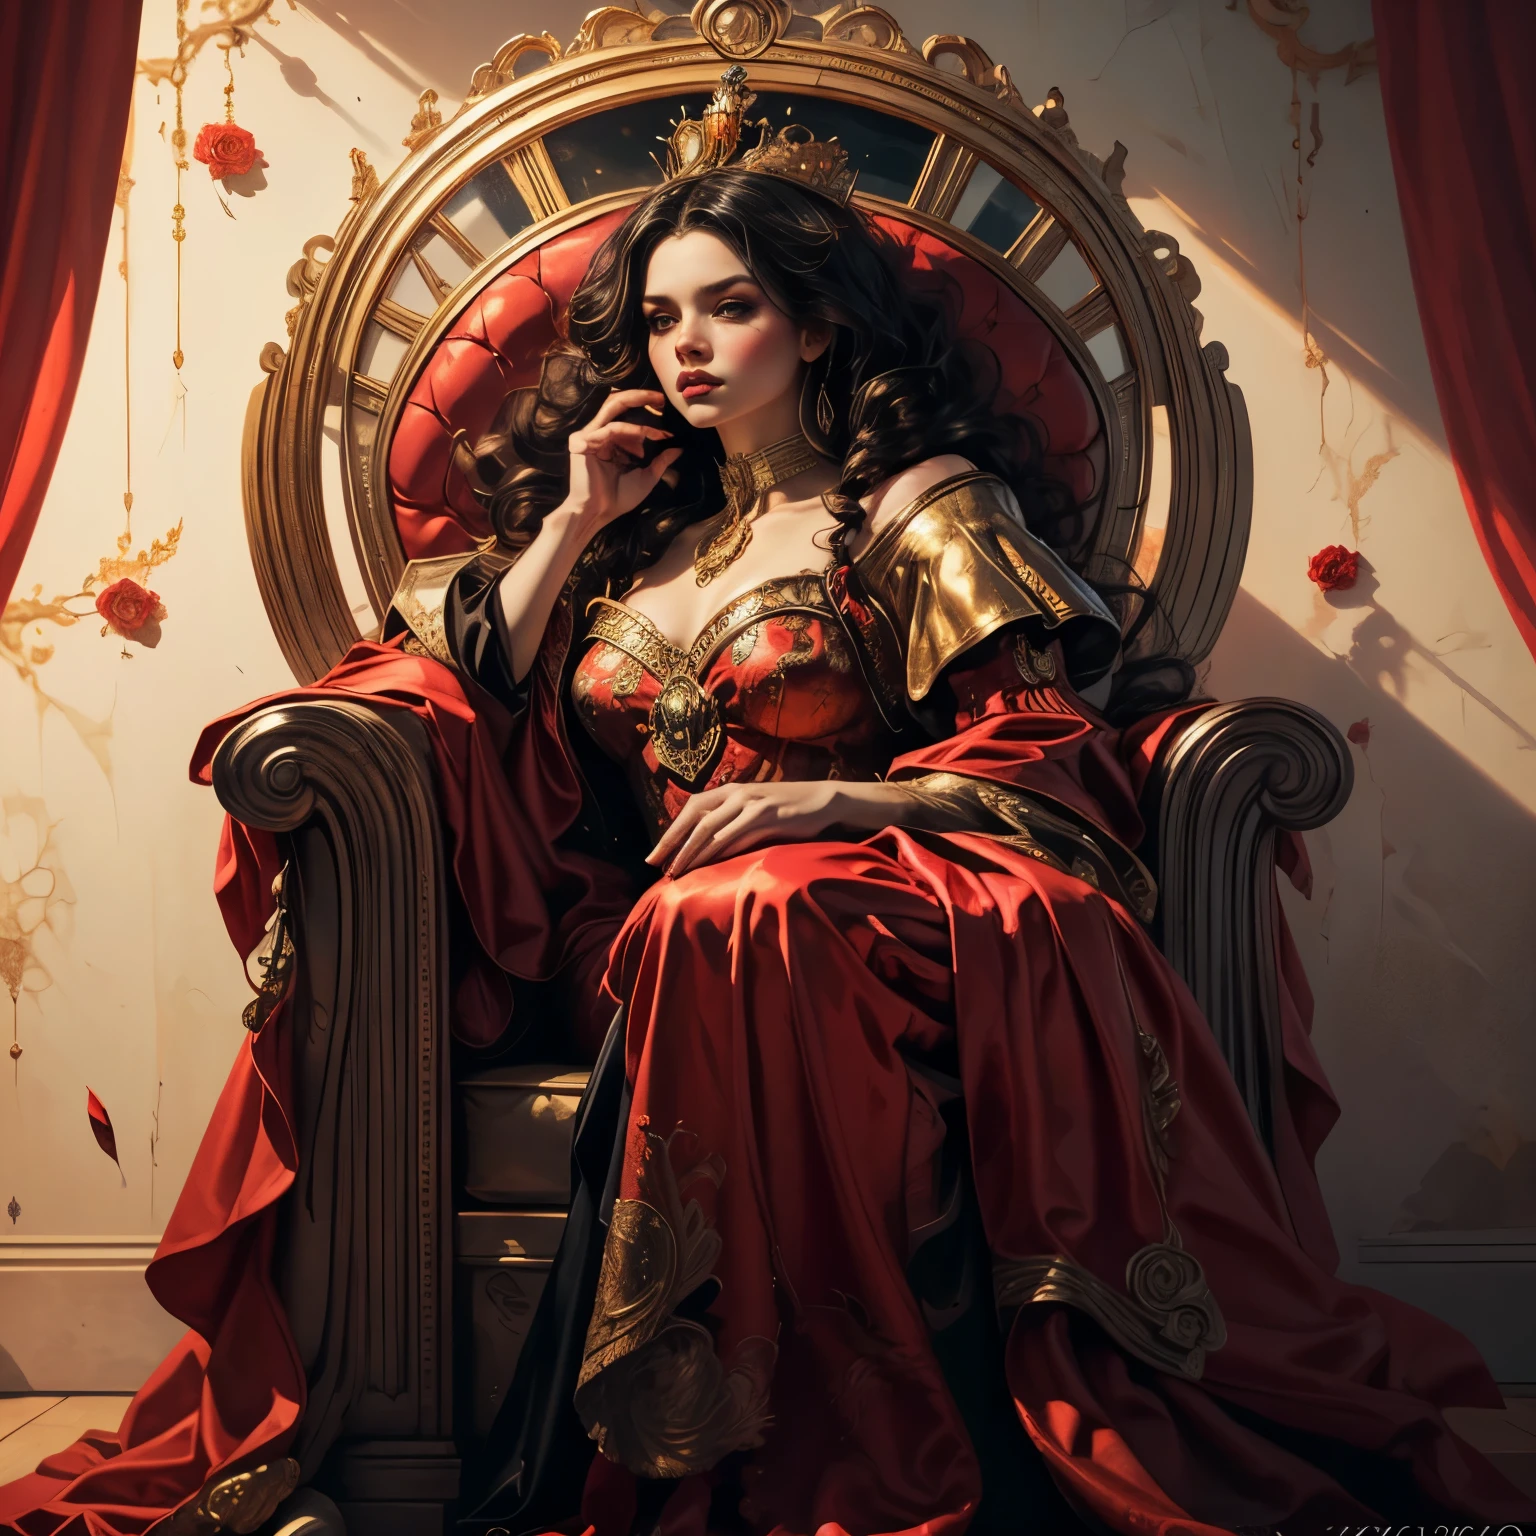 (全身ポートレート:1.1), 美しいハートの女王, エレガントな赤いロングドレス, 流れる赤い岬, 金の王冠, 印象的な赤いメイク, 鋭い視線, 王者の姿勢, 華やかな王座, ピンクと赤のバラでいっぱいの背景:1.1, ドラマチックな照明, (最高品質,4k,8K,高解像度,傑作:1.2),非常に詳細な,(現実的,photo現実的,photo-現実的:1.37),複雑な詳細,映画の構成,鮮やかな色彩,明暗法照明,劇的な影,ファンタジー,デジタルアート